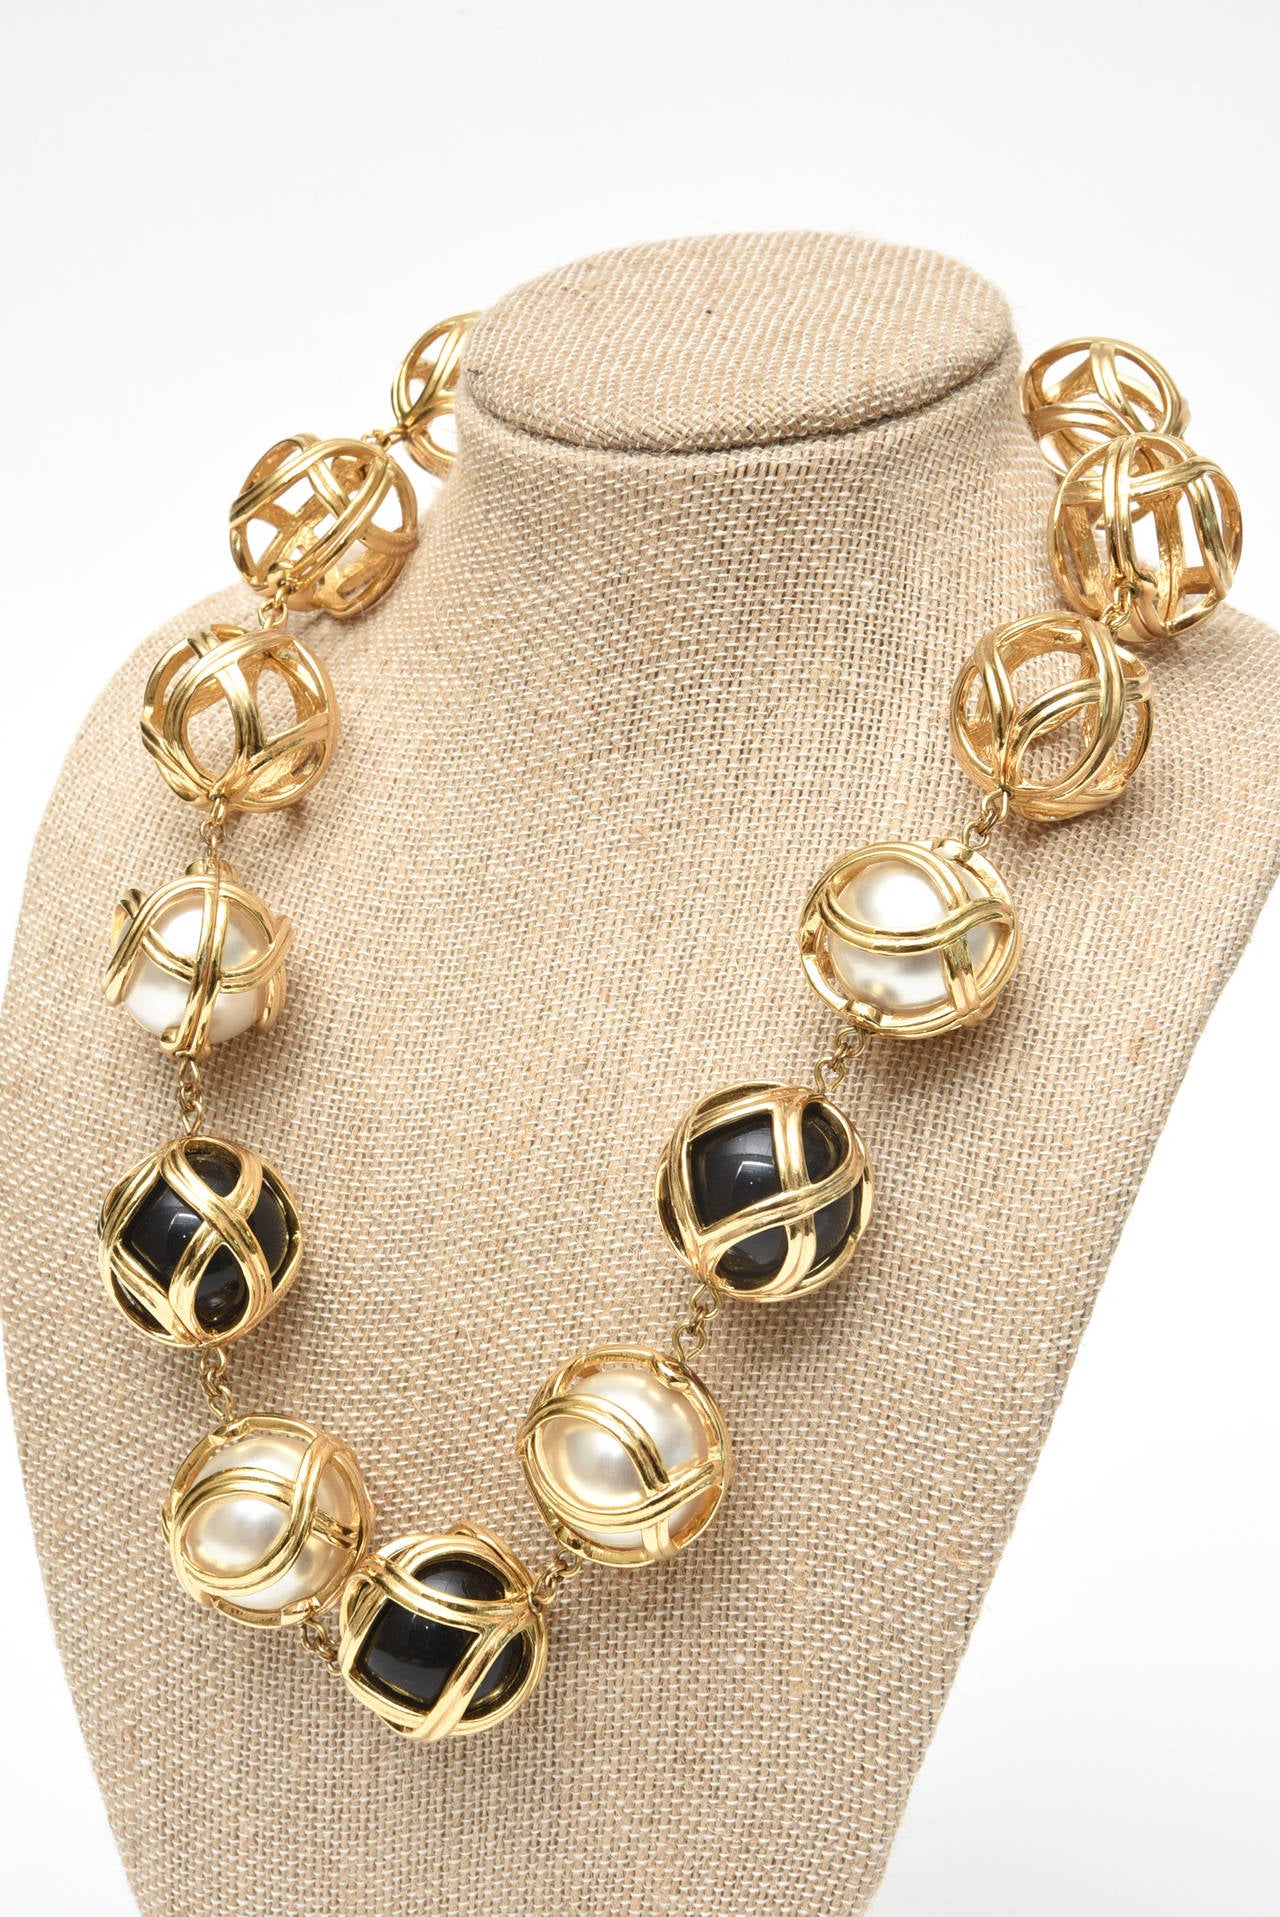 vintage dior necklace gold